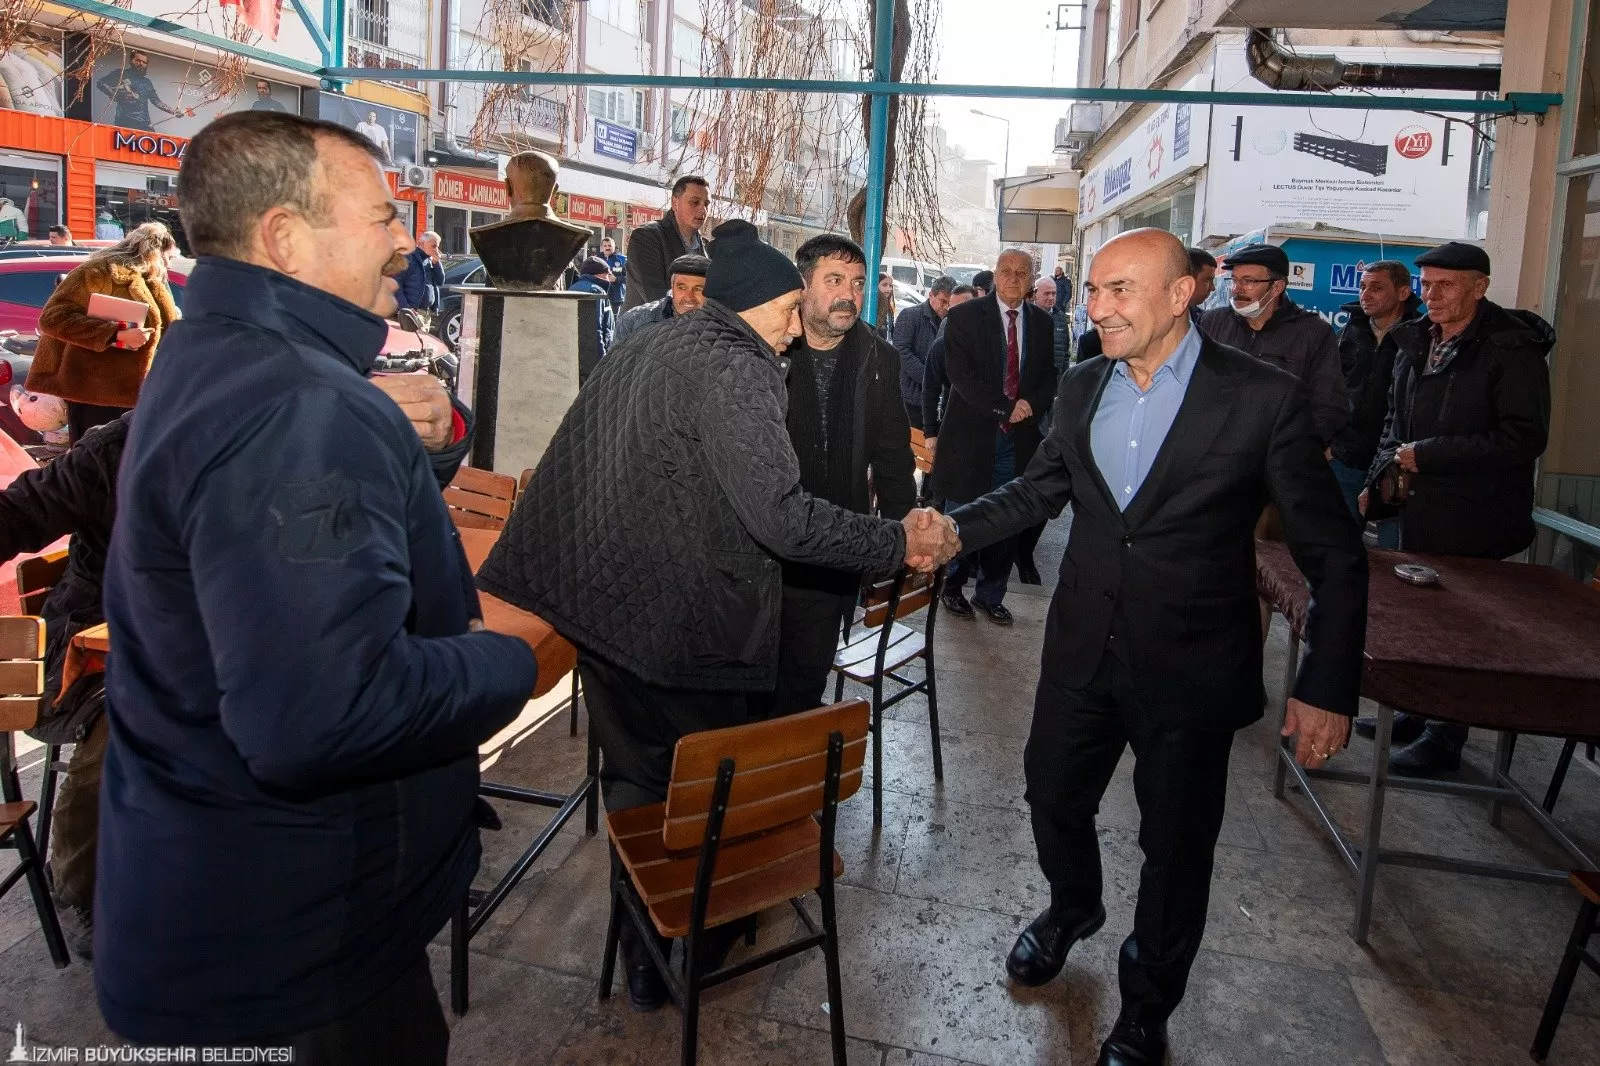 İzmir Büyükşehir Belediye Başkanı Tunç Soyer, görev süresi boyunca desteklerini esirgemeyen İzmirlilere teşekkür etmek amacıyla Tire Süt Kooperatifi'ni ziyaret etti.